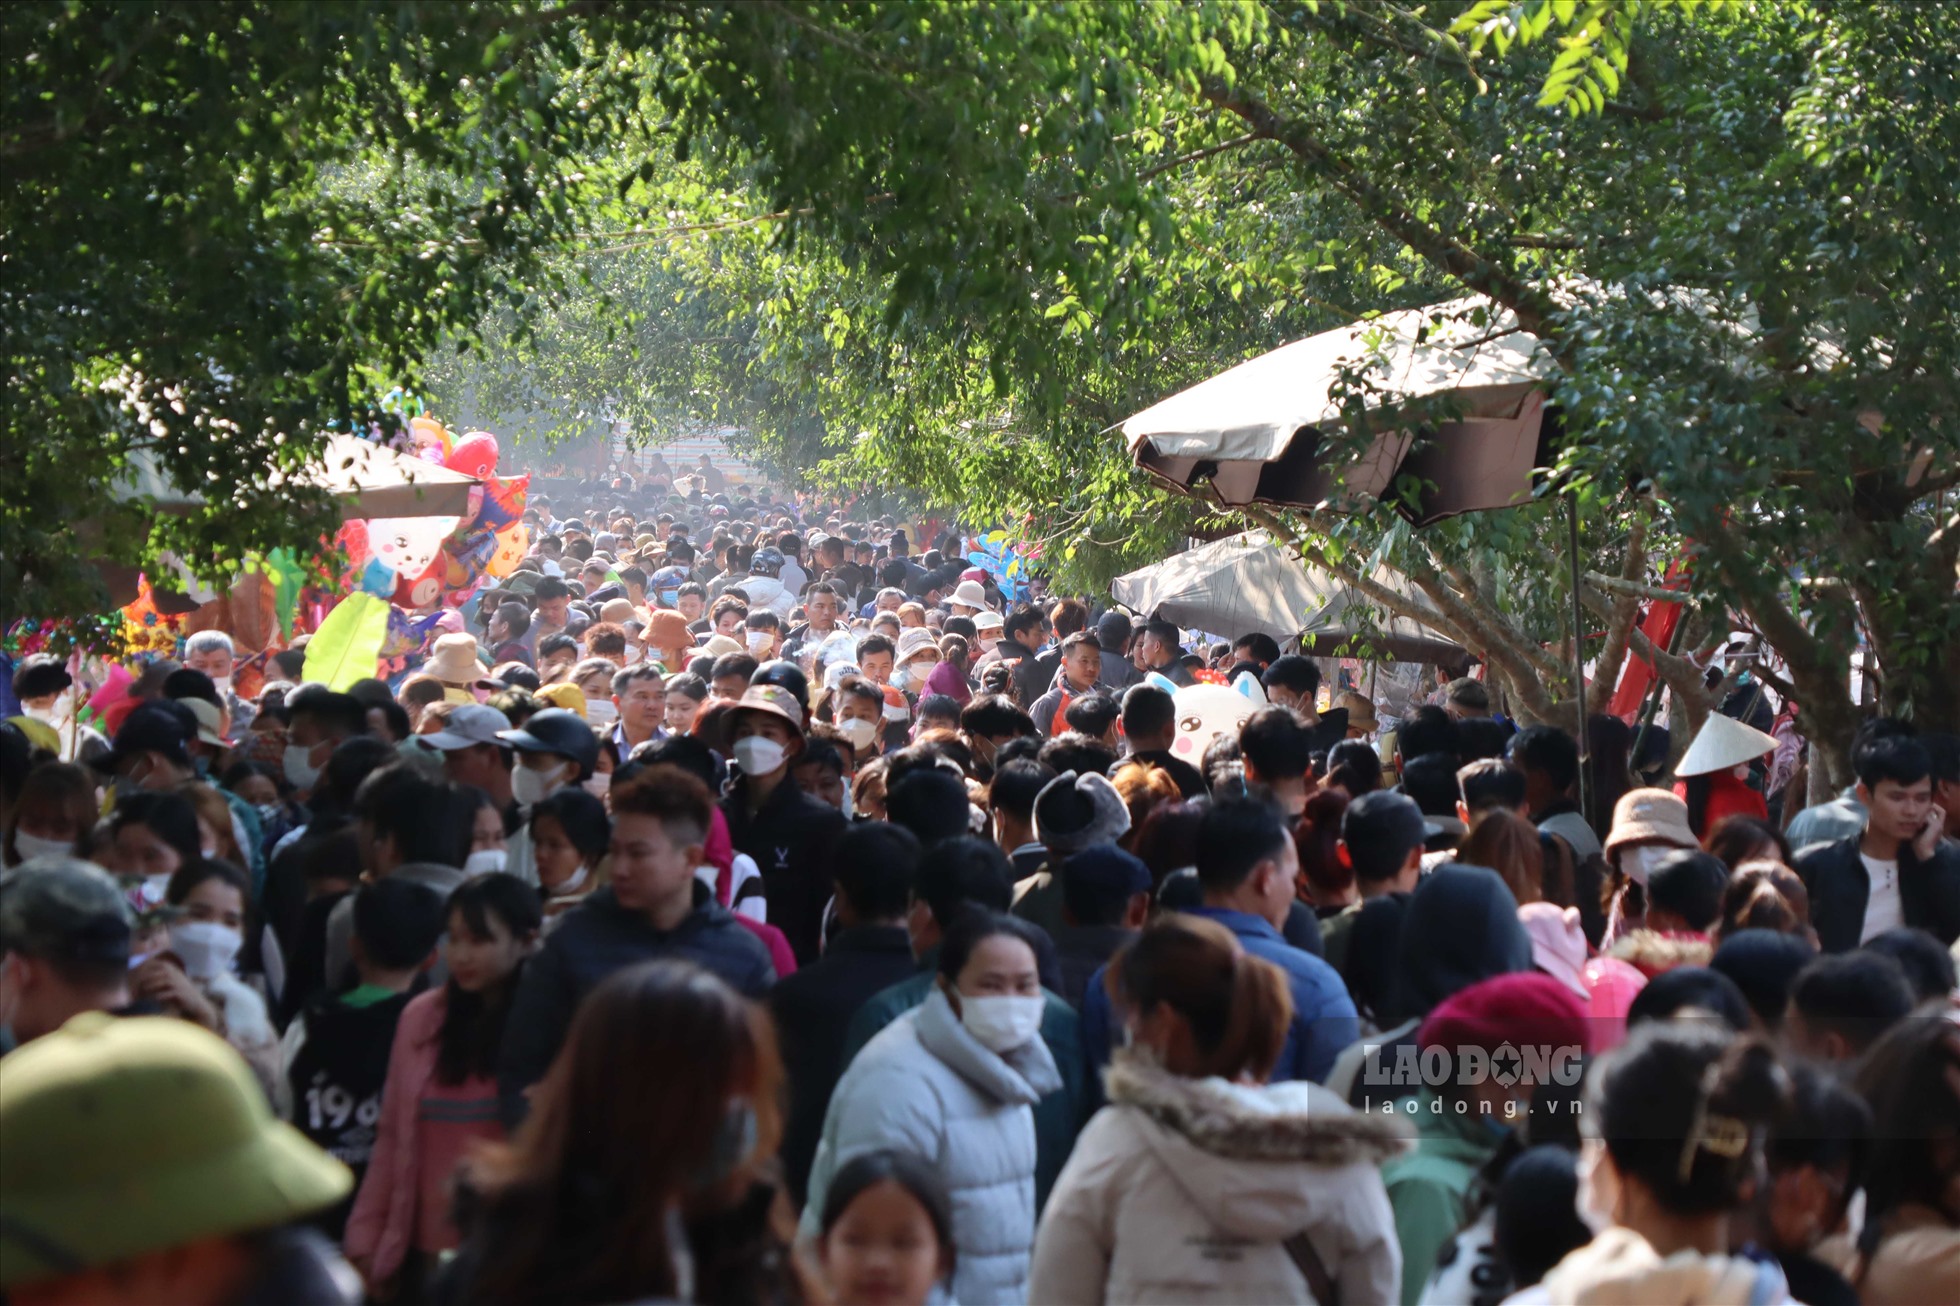 Ghi nhận trong 2 ngày diễn ra lễ hội có rất đông người dân địa phương cũng du khách thập phương đến tham dự, tham quan và cầu may đầu năm.